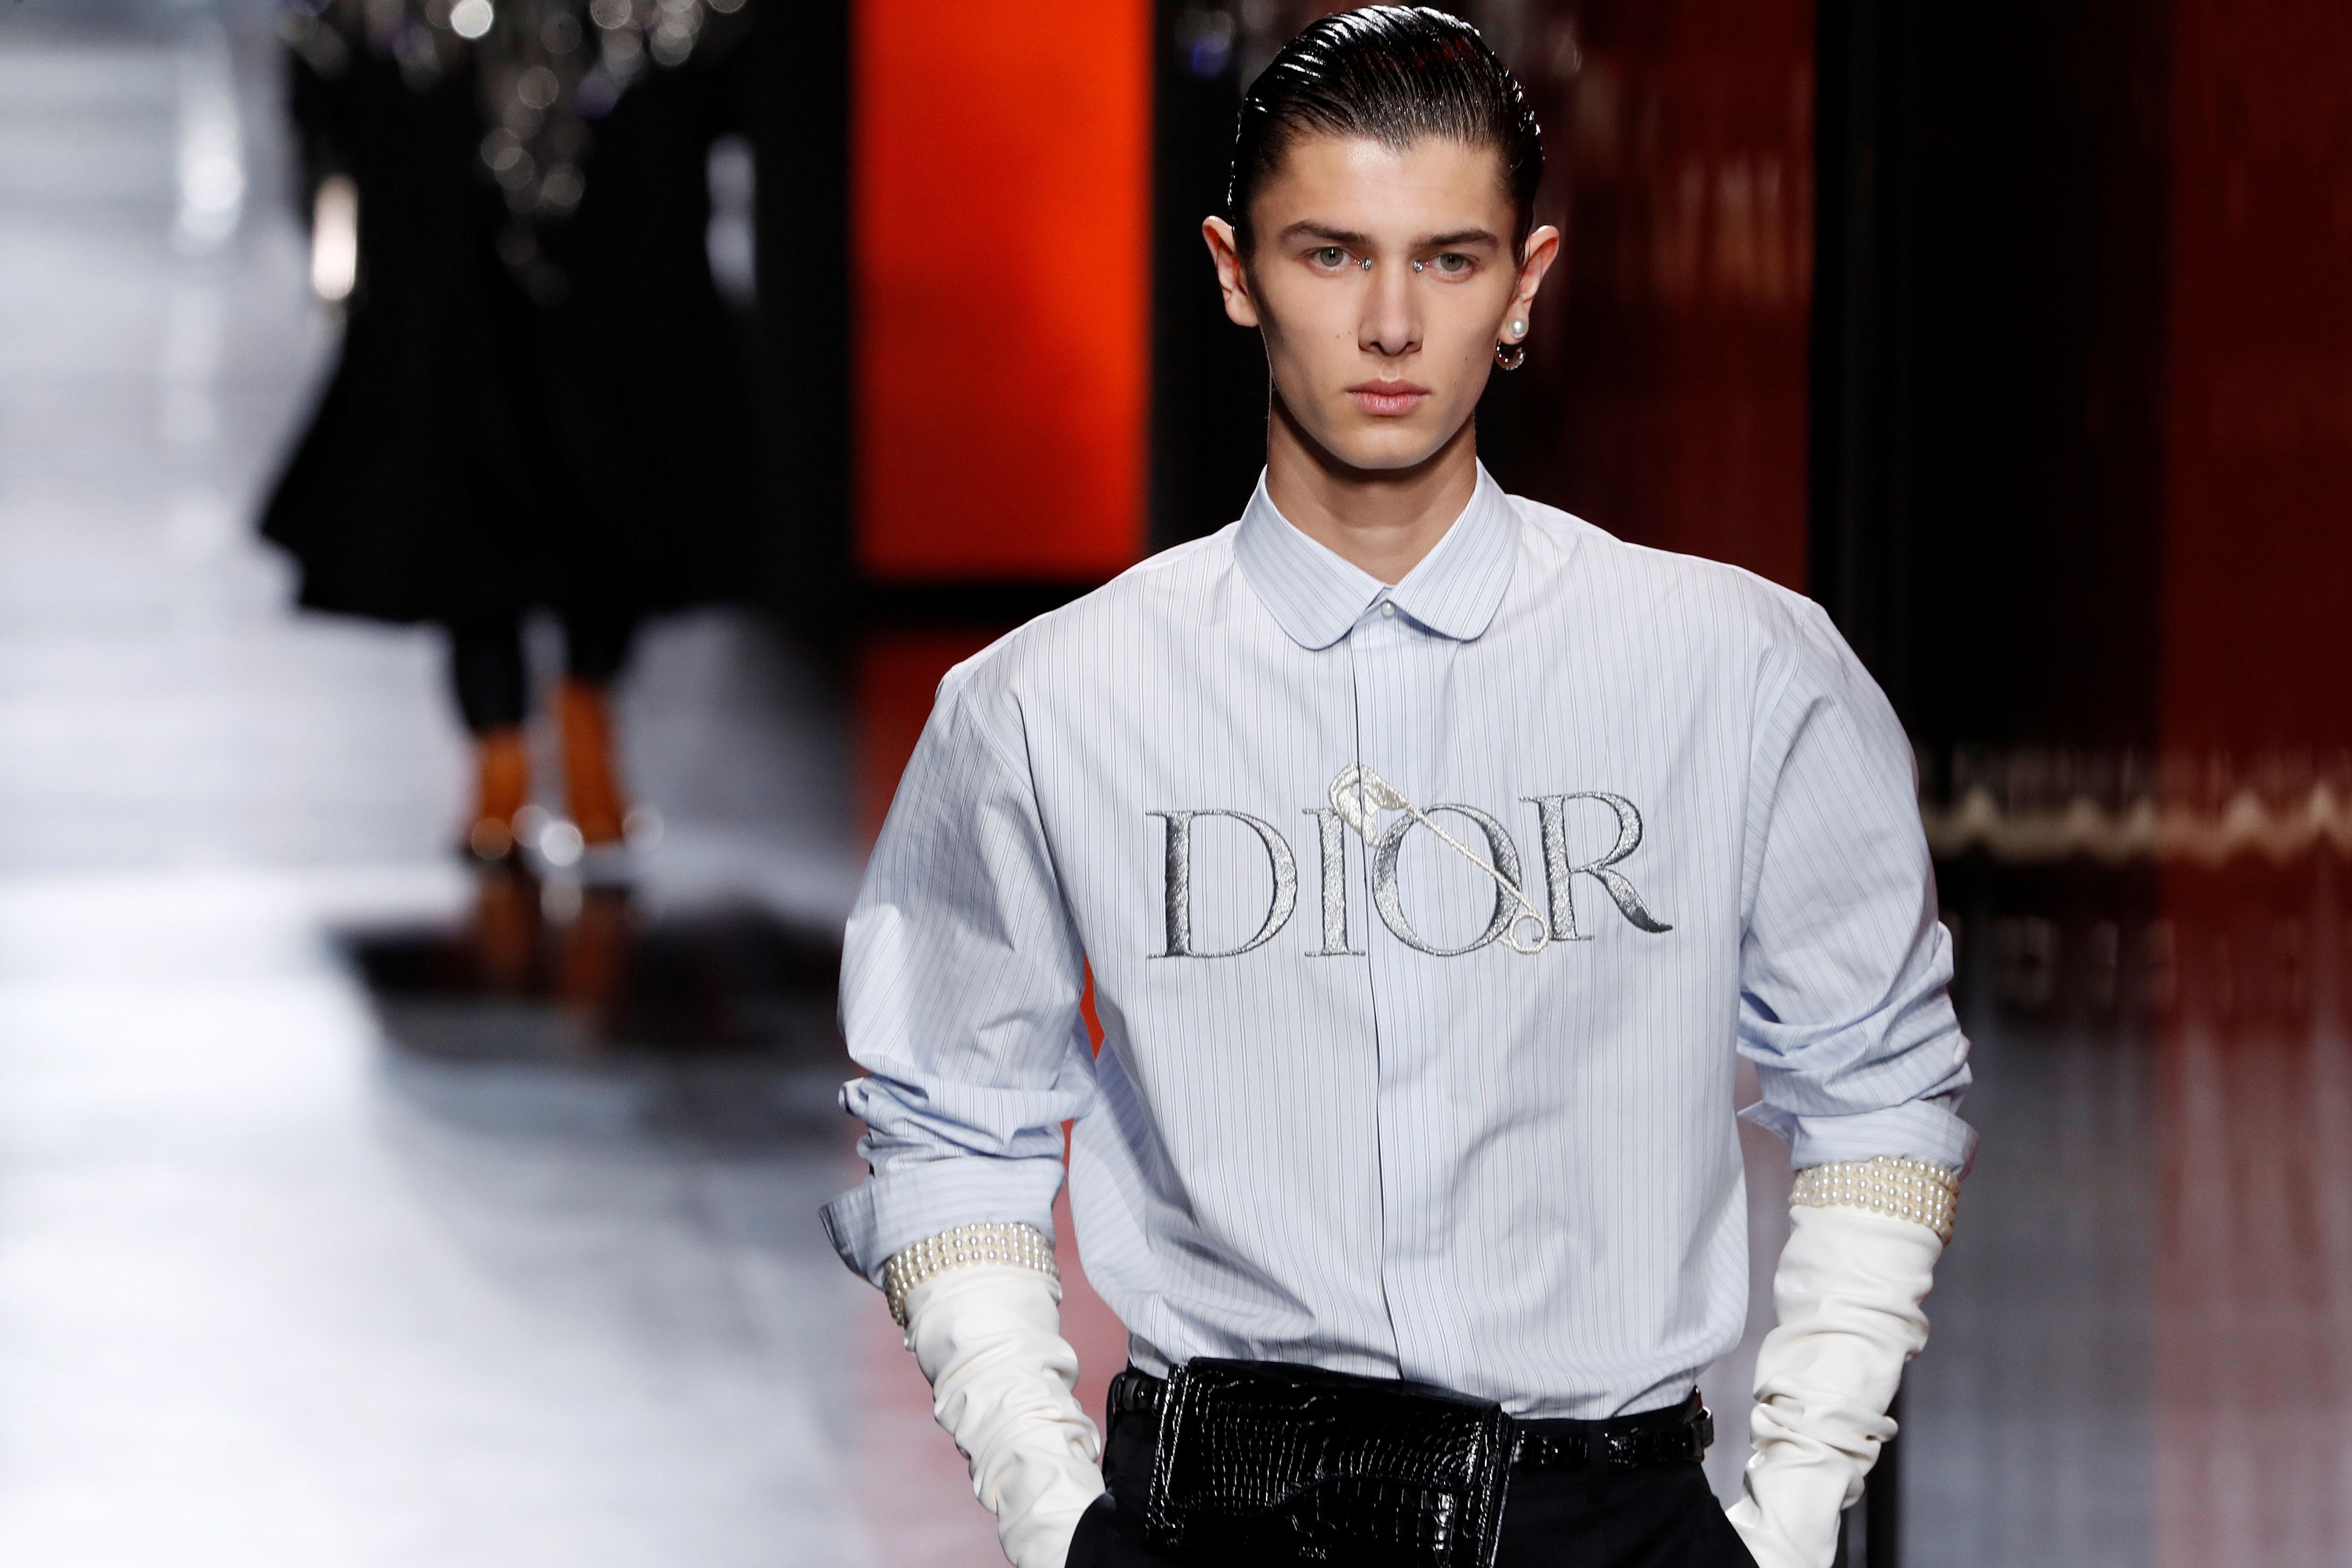 Dior представят новую мужскую коллекцию онлайн. Показа не будет из-за ограничительных мер